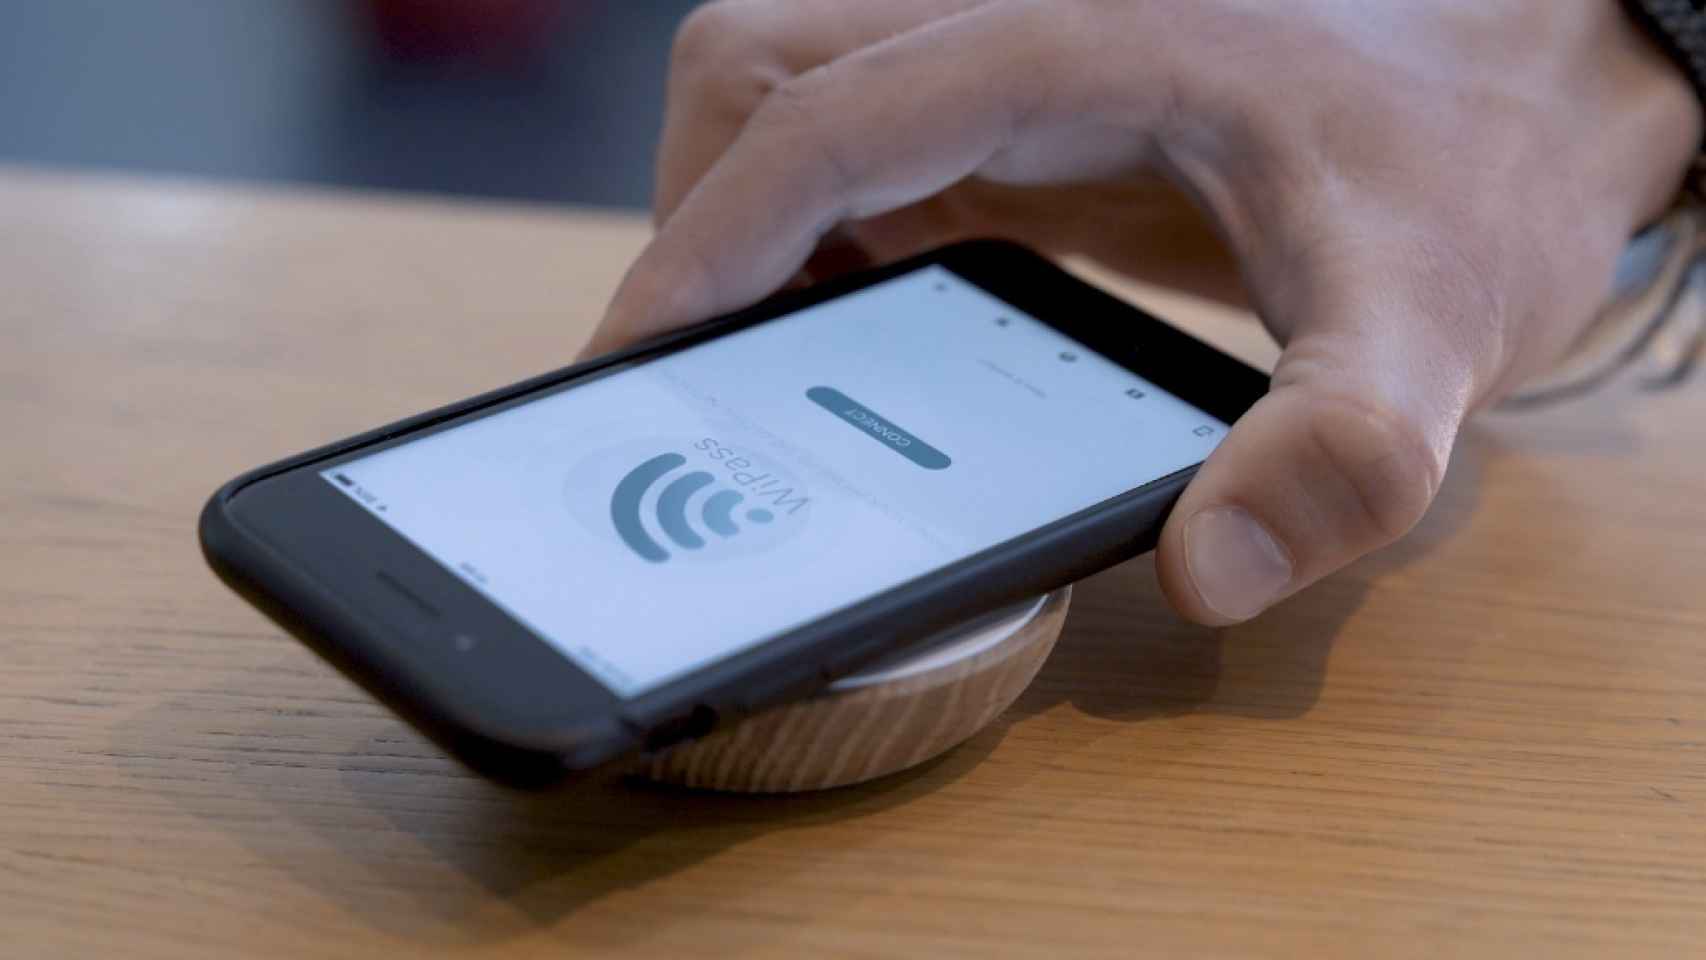 La tecnología de Wipass facilitar obtener wifi sin contraseñas con sólo acercar el móvil al dispositivo.